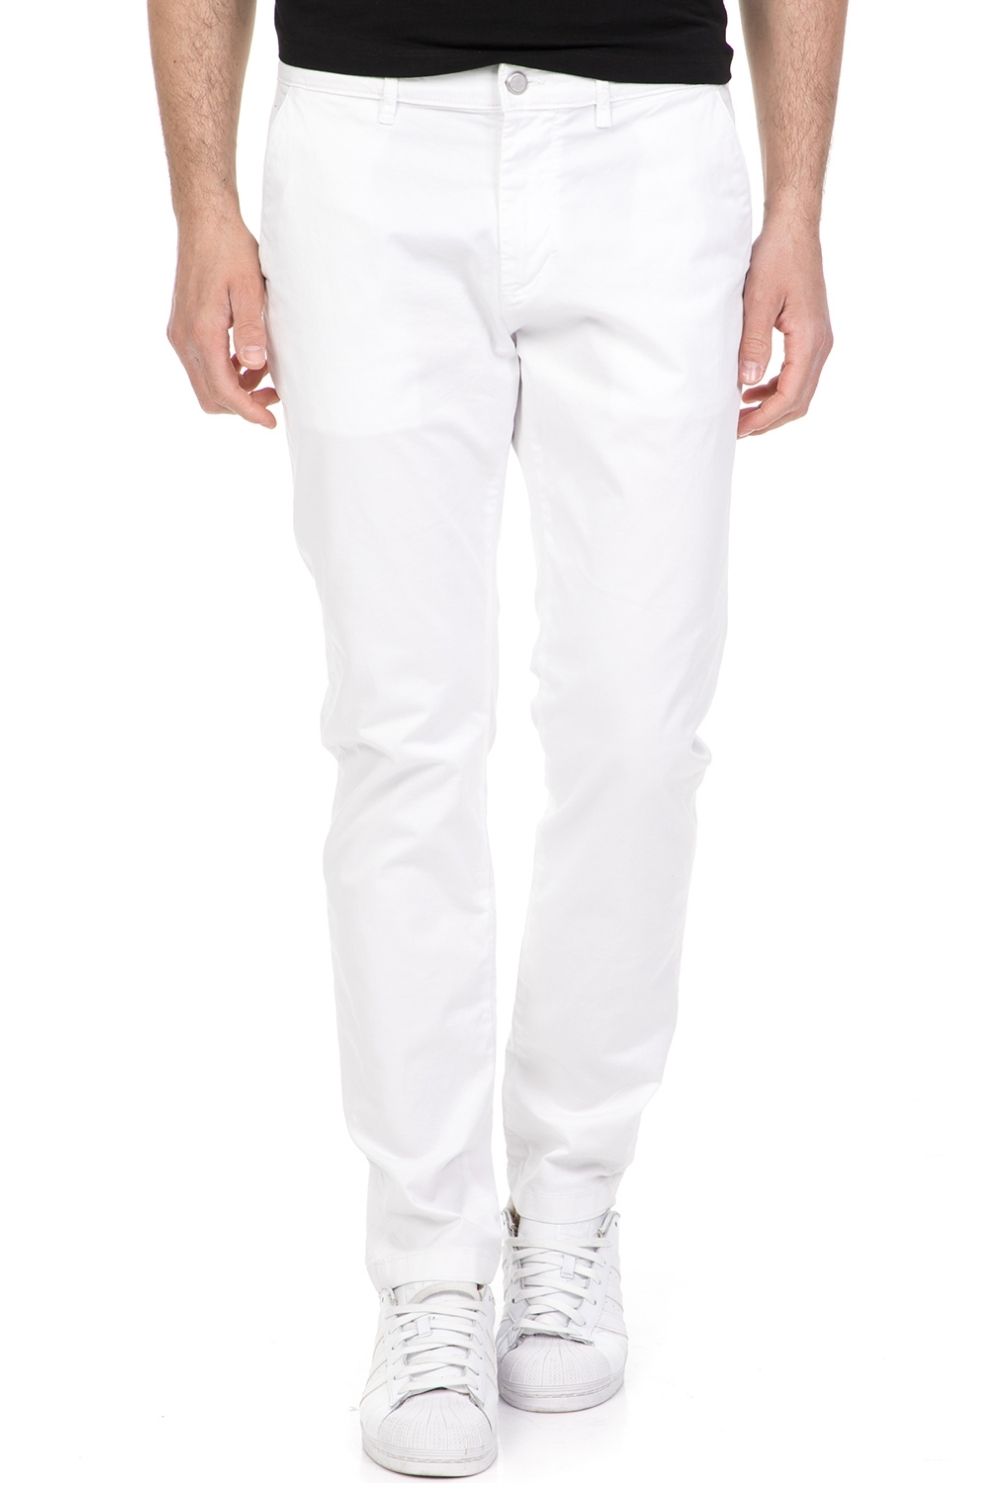 Ανδρικά/Ρούχα/Παντελόνια/Chinos SSEINSE - Ανδρικό chino παντελόνι SSEINSE λευκό